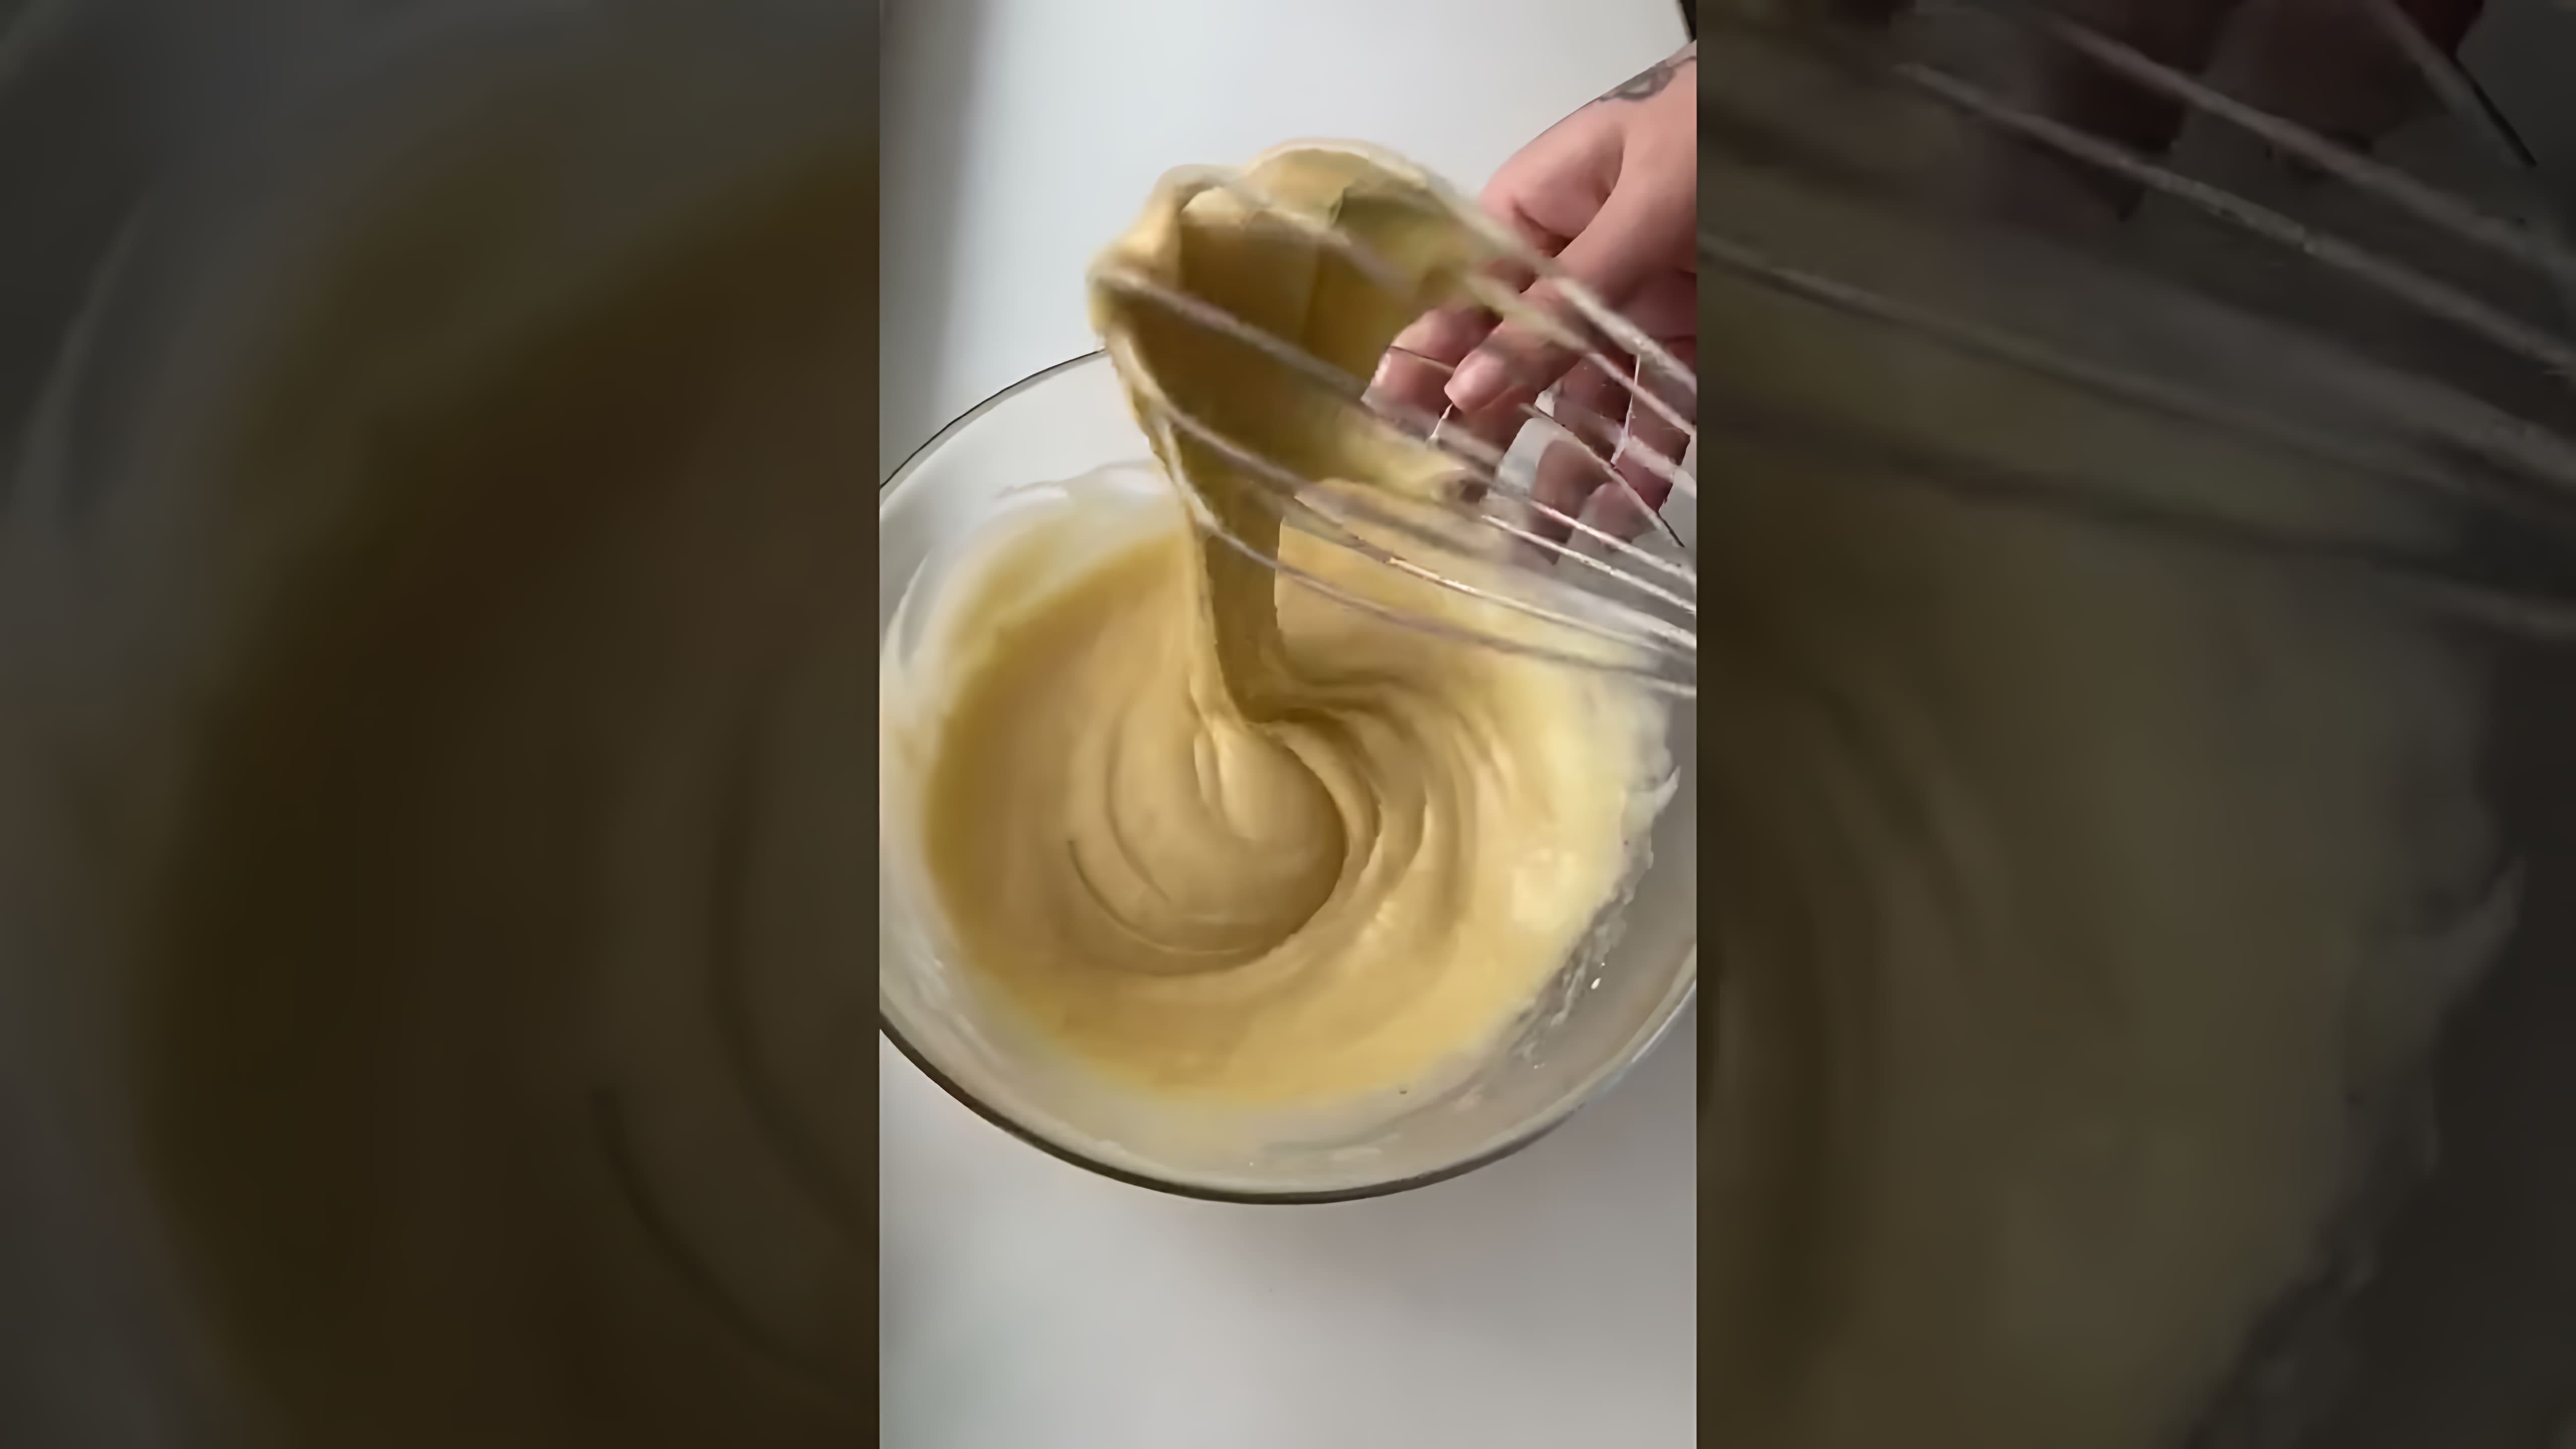 Бисквит в микроволновке - это быстро и просто! 👍💯❤

В этом видео-ролике я покажу, как приготовить вкусный бисквит в микроволновке всего за несколько минут